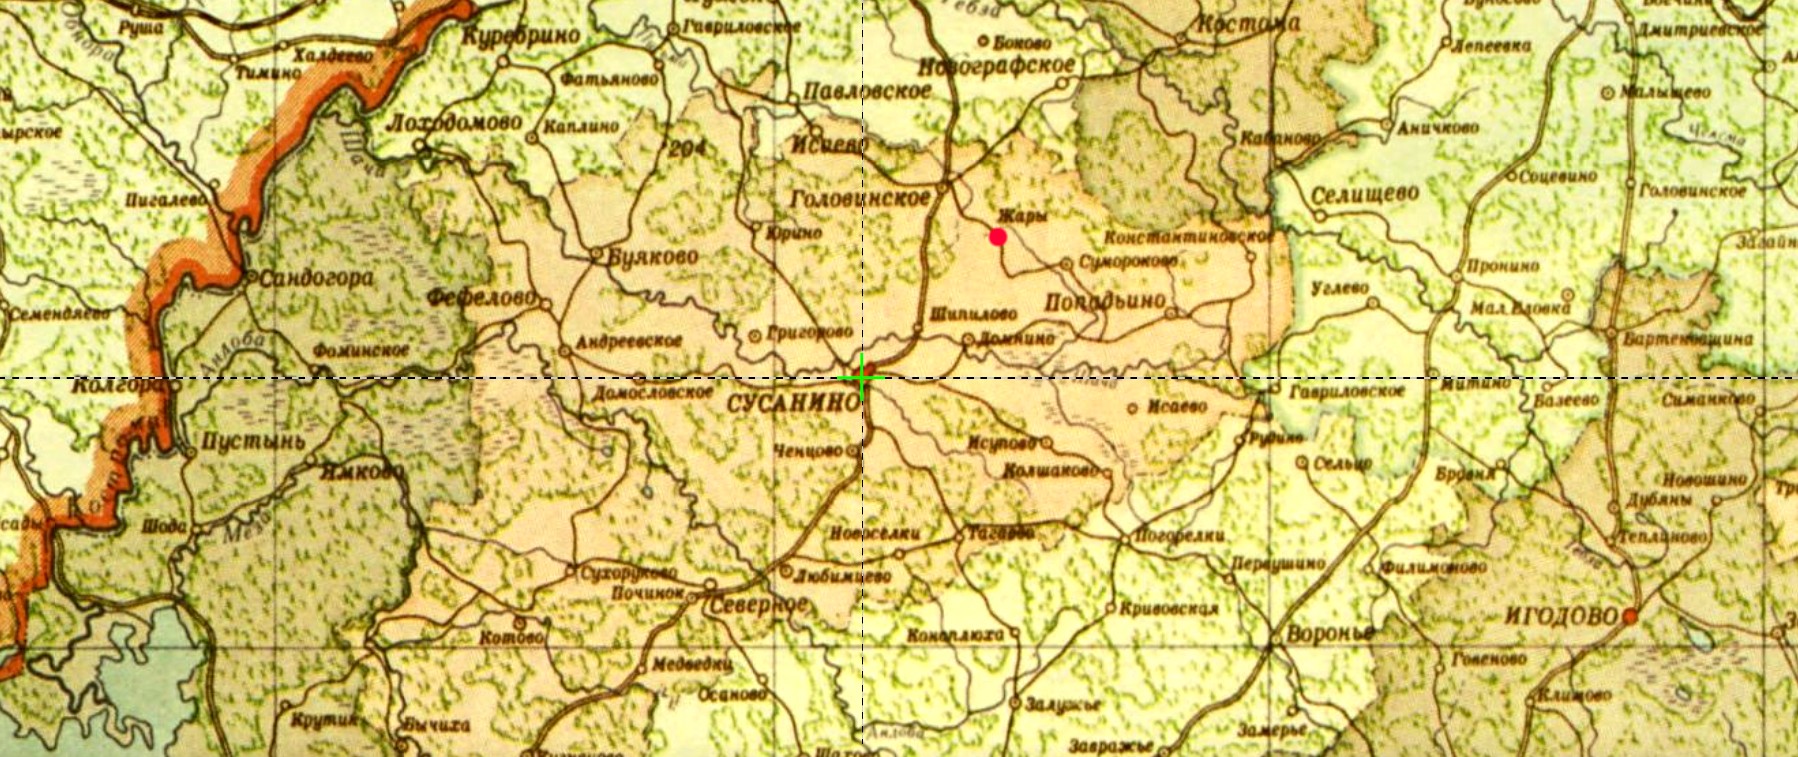 Деревня Жары на карте 1956 г.